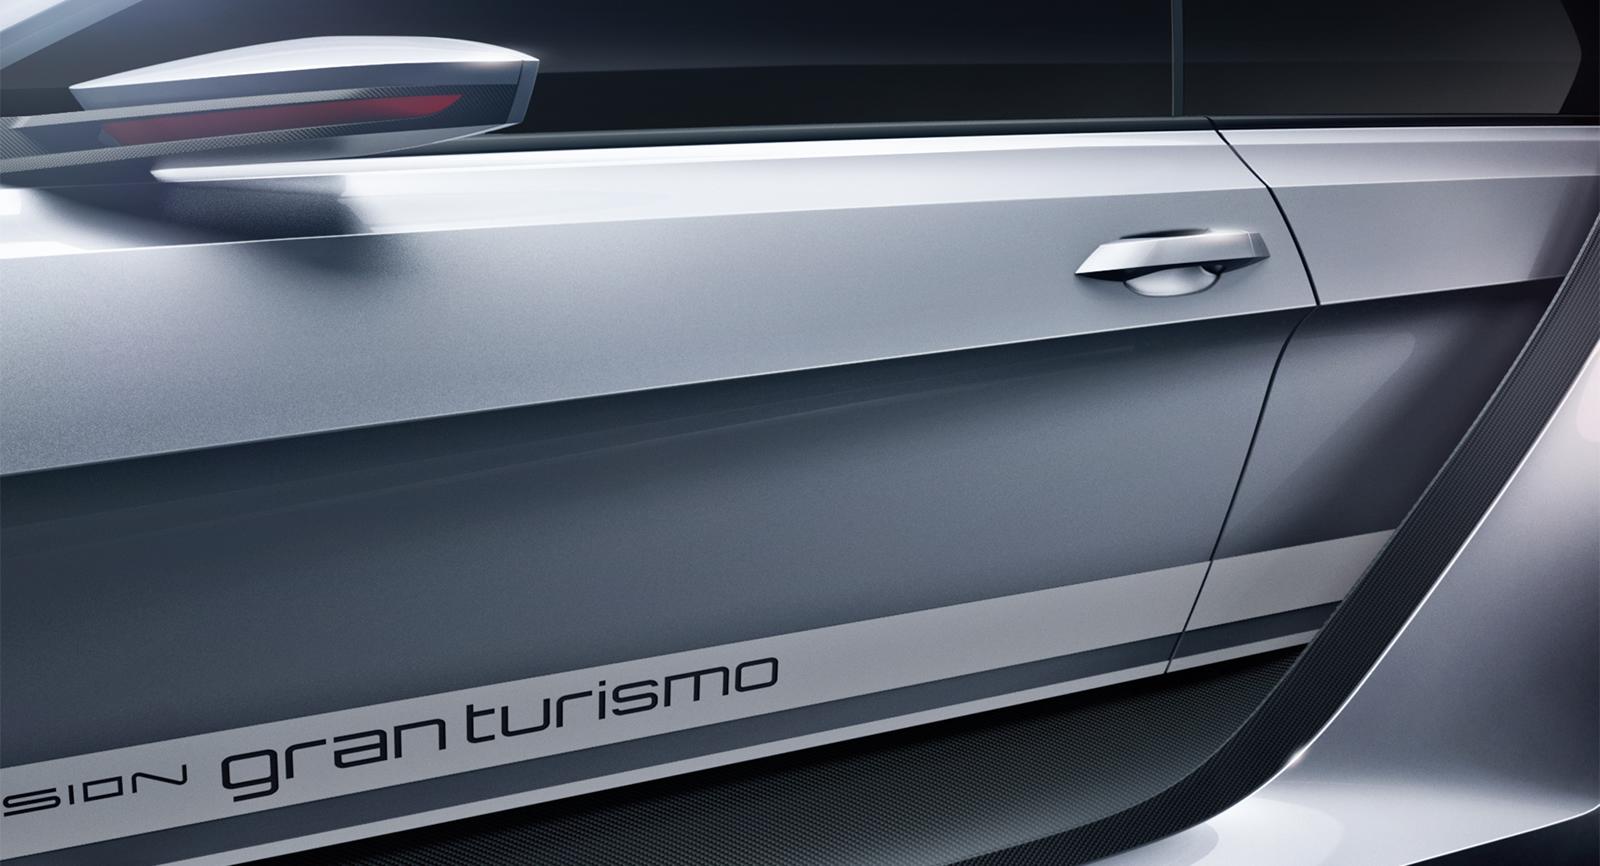 Volkswagen выпустил множество изображений и даже видео предстоящего GTI Supersport Vision GranTurismo Concept. Автомобиль сделан на основе GTI Roadster Vision Gran Turismo, который был представлен в прошлом году в гоночном симуляторе, Gran Turismo 6.